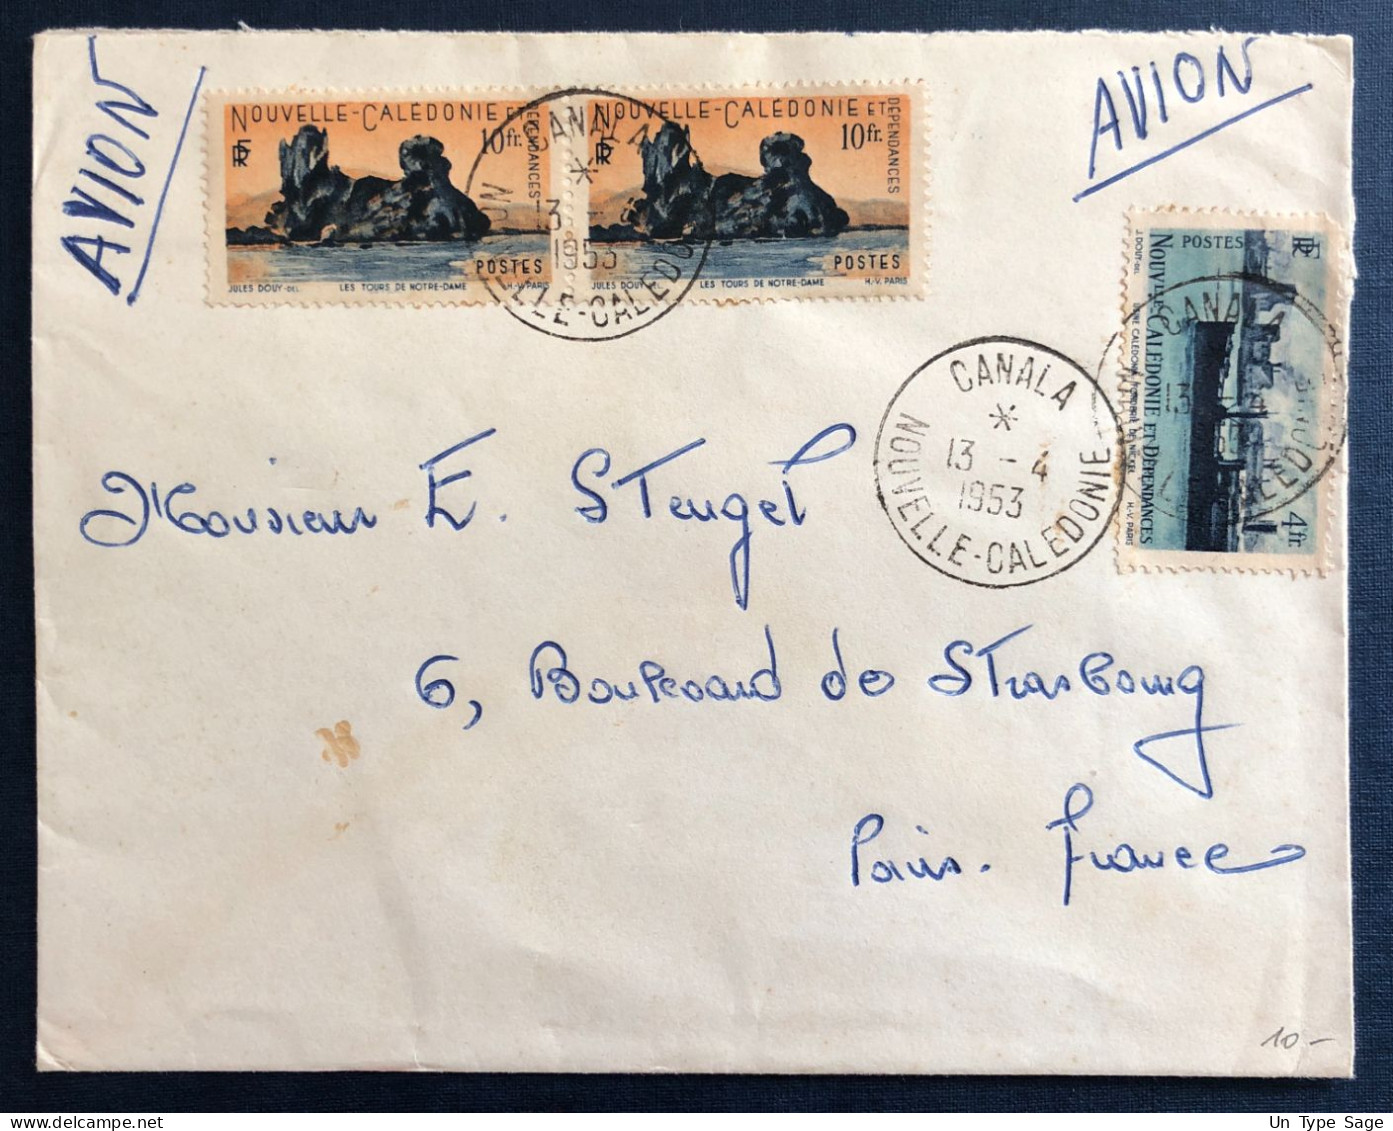 Nouvelle-Calédonie, Divers Sur Enveloppe TAD CANALA 13.4.1953 - (B3261) - Briefe U. Dokumente